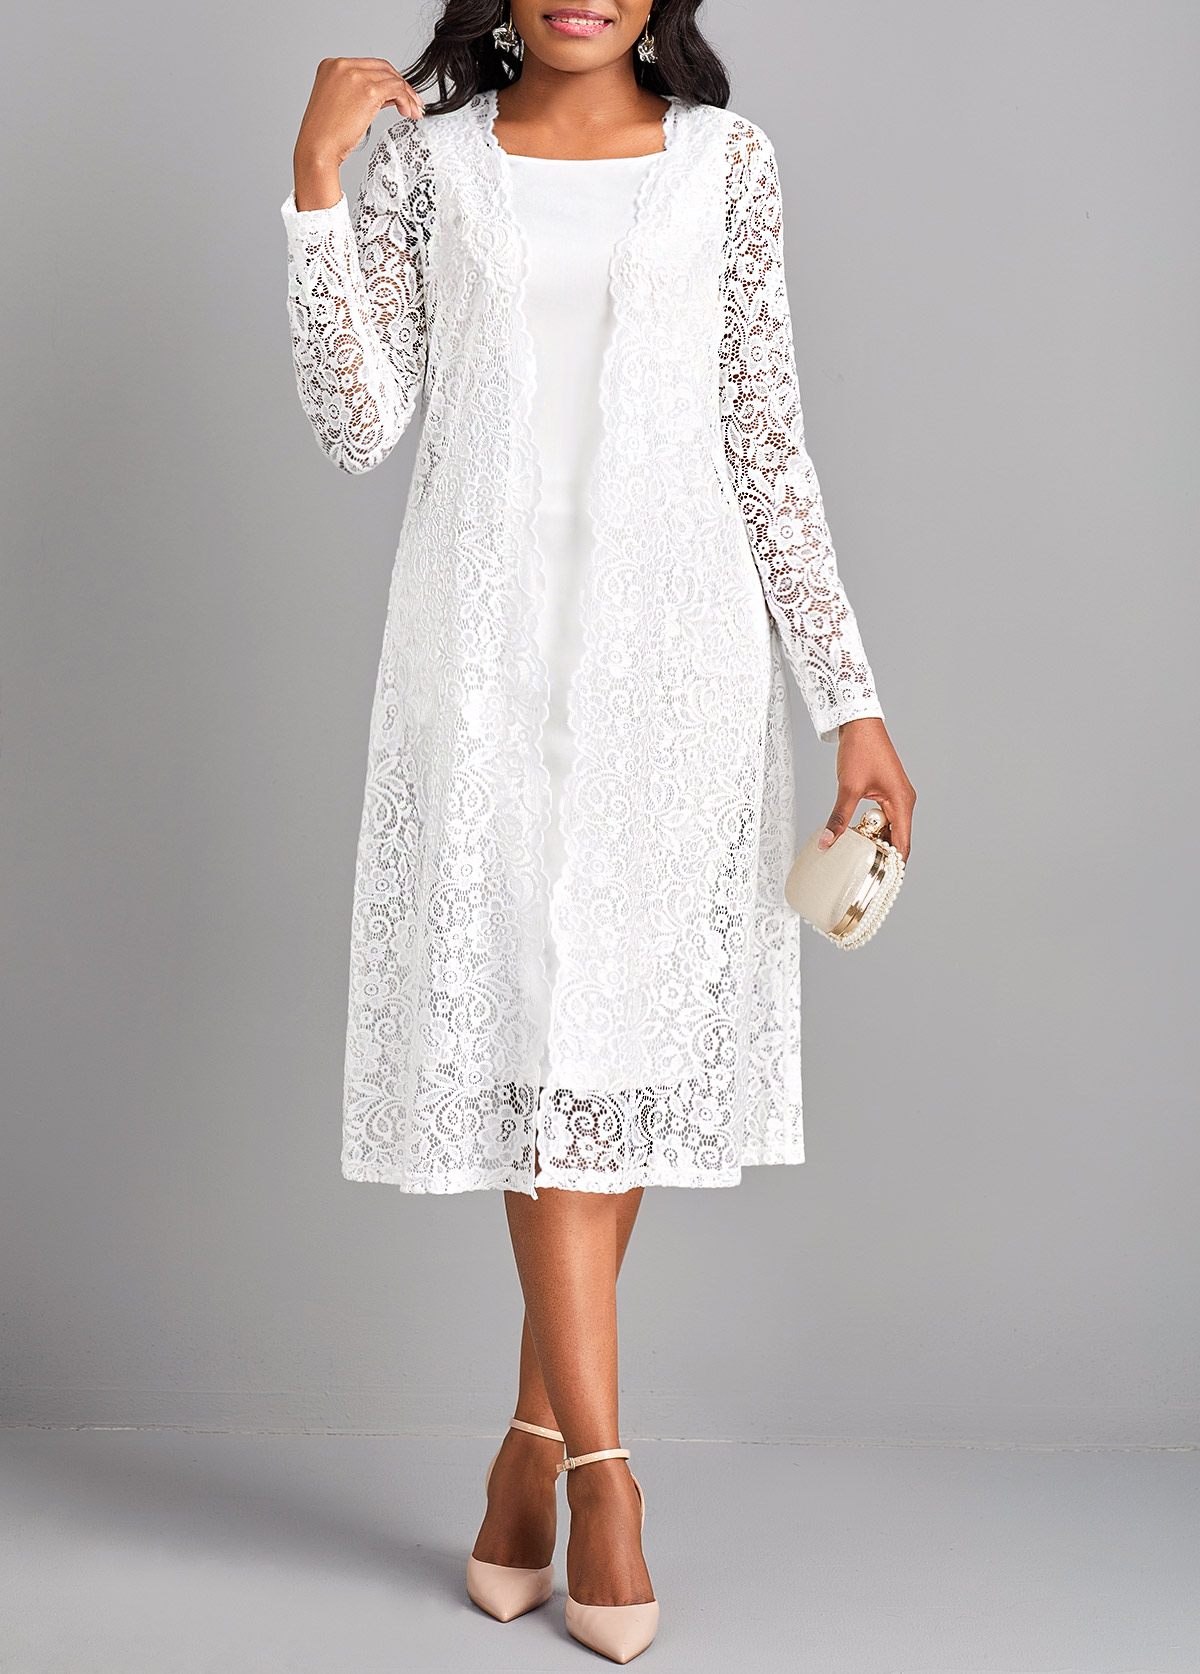 Lace Two Piece Suit Square Neck White Dress